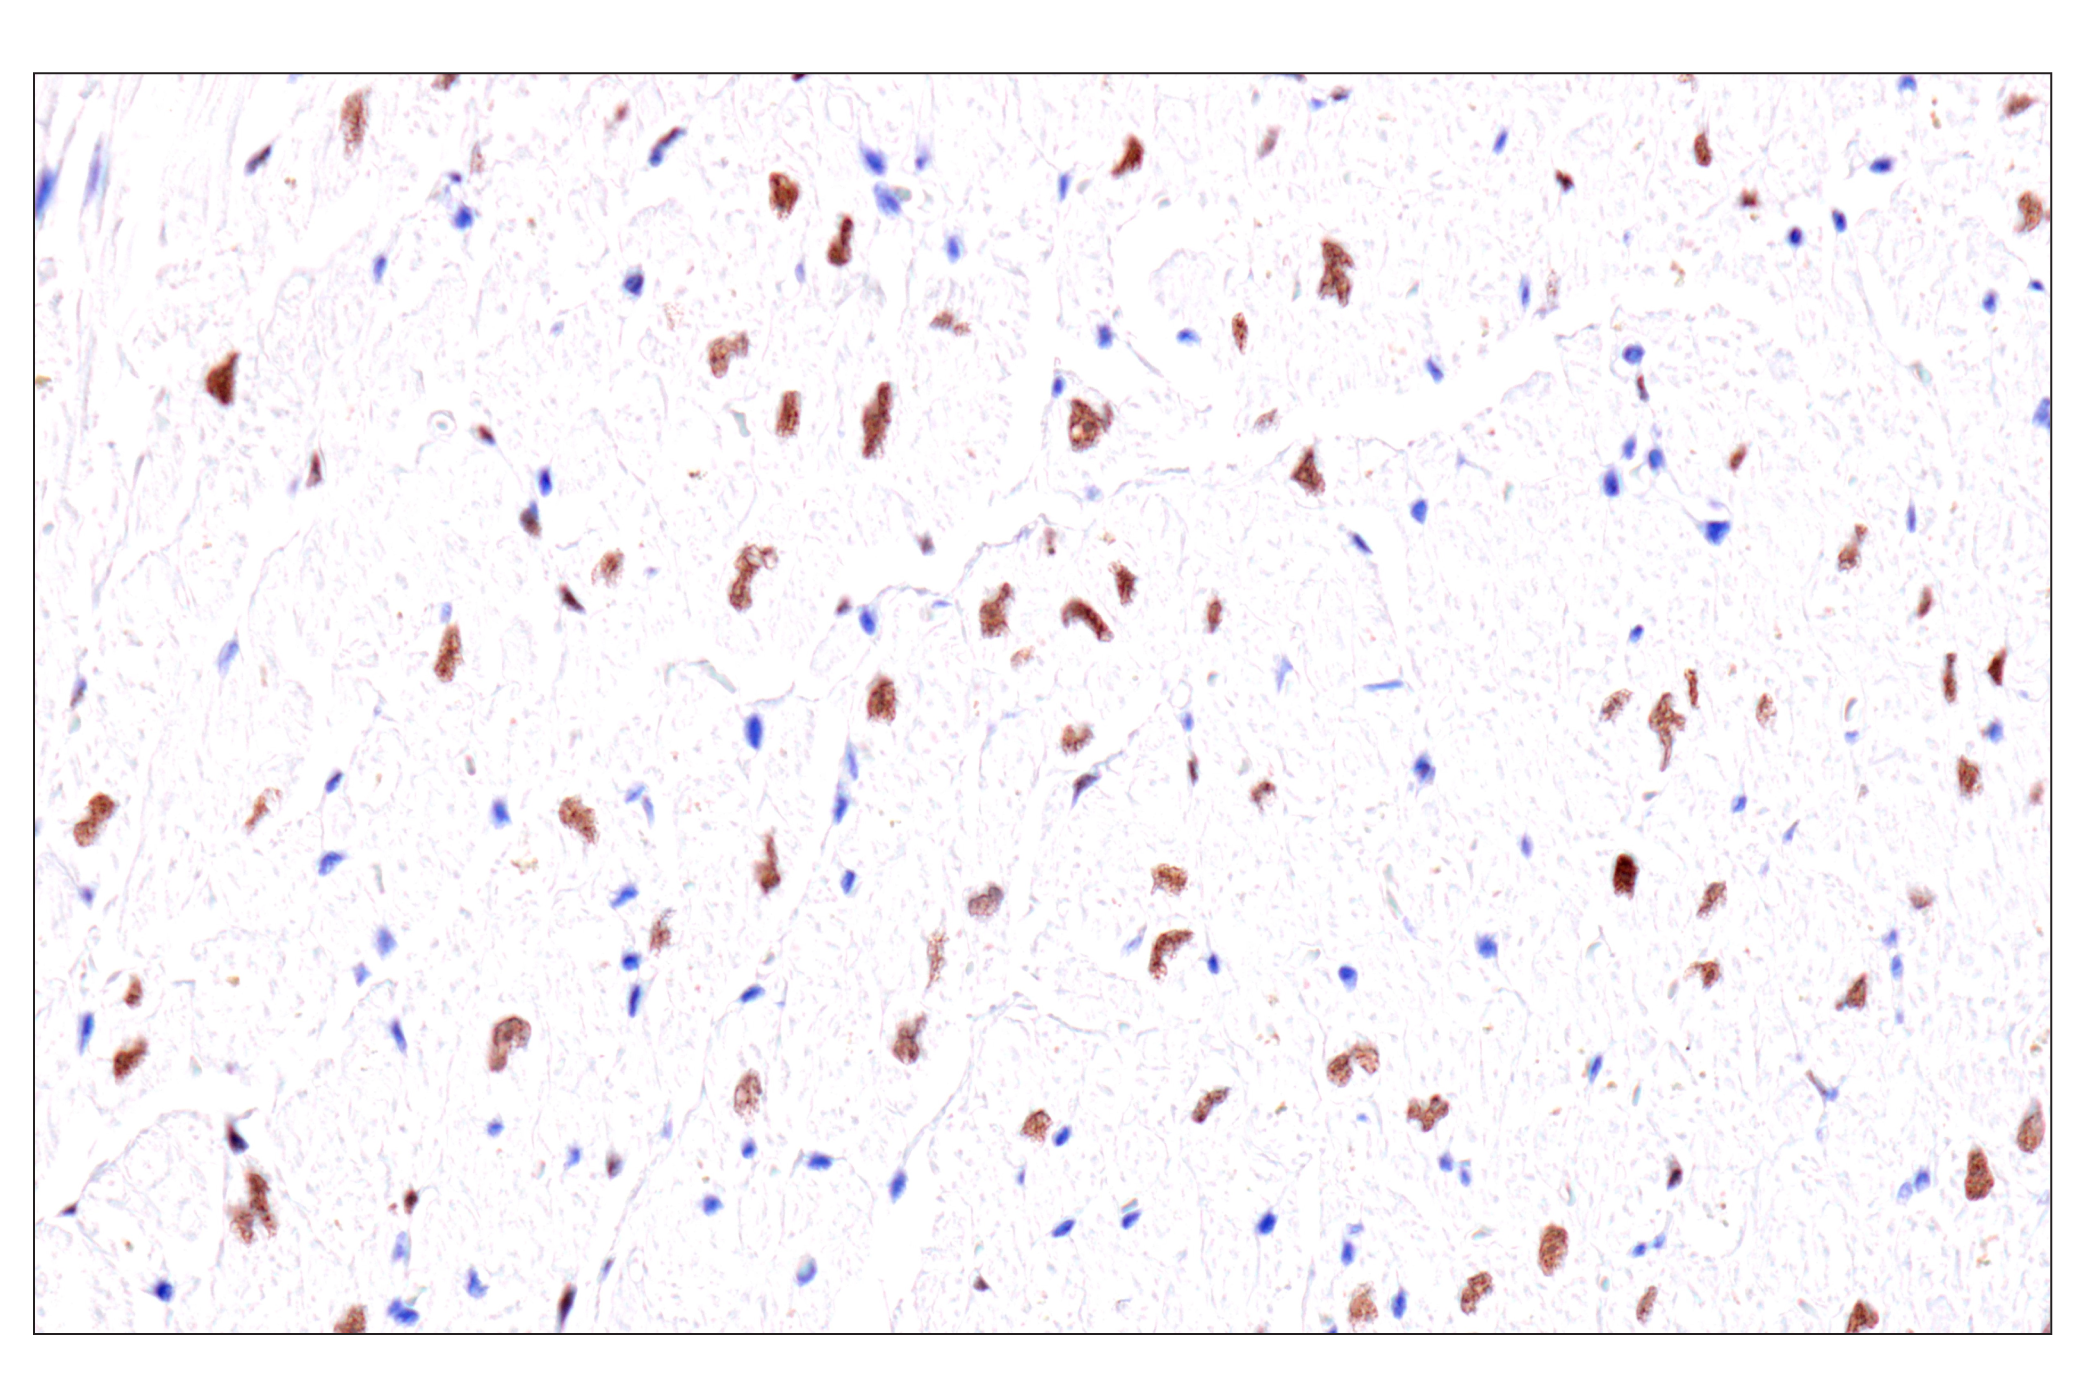  Image 53: GATA Transcription Factor Antibody Sampler Kit